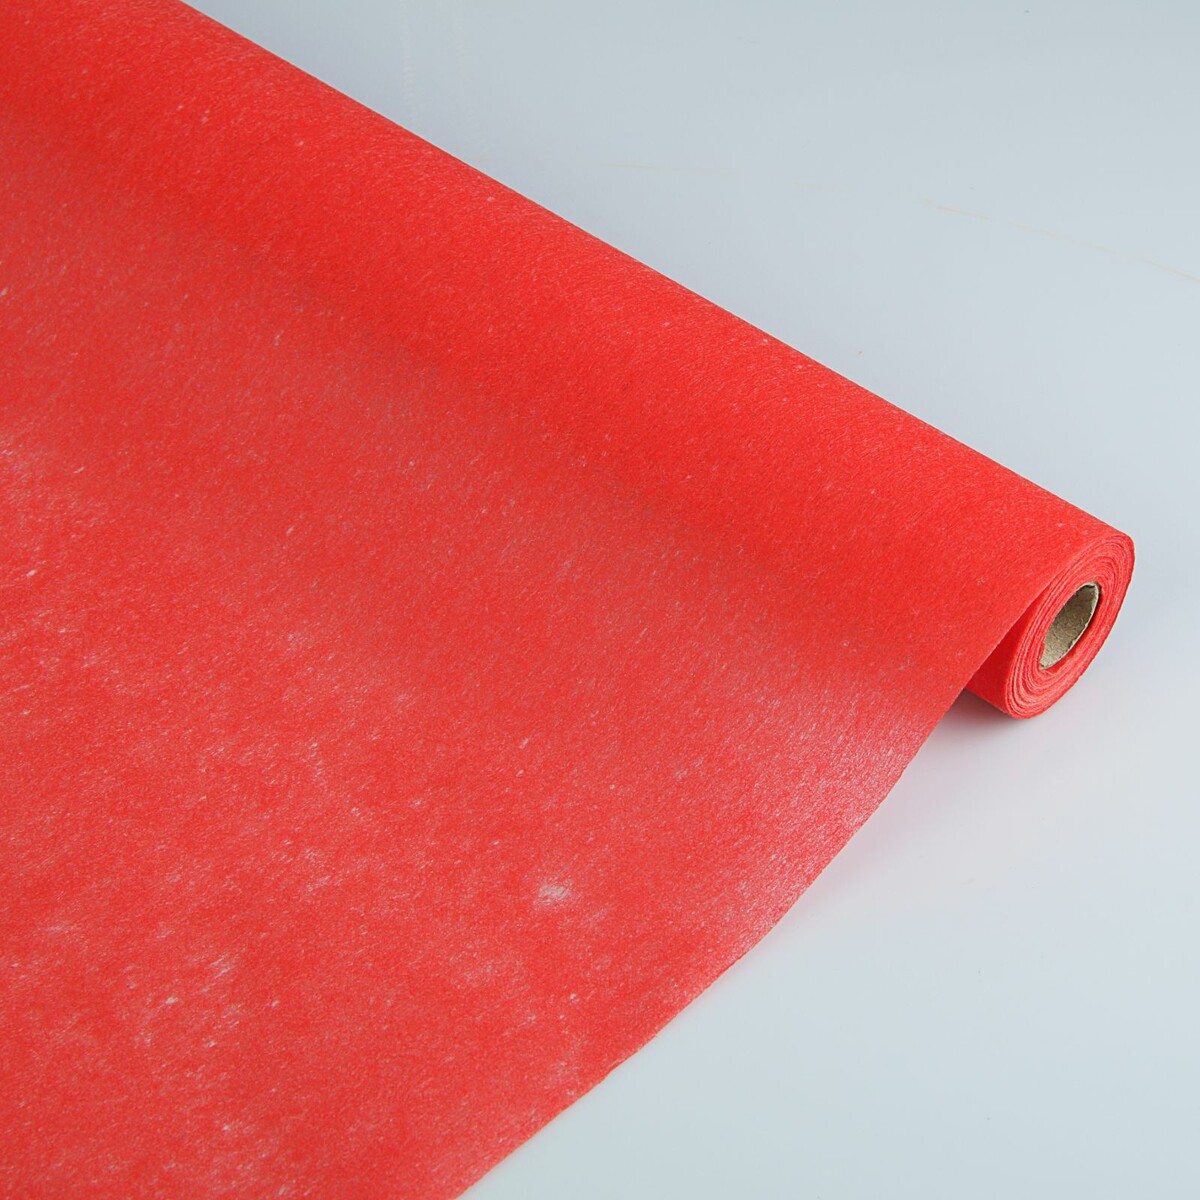 Фетр для упаковок и поделок, однотонный, красный, двусторонний, рулон 1шт., 50 см x 15 м фетр для декора и флористики однотонный бургундский красный рулон 1шт 50 см x 15 м